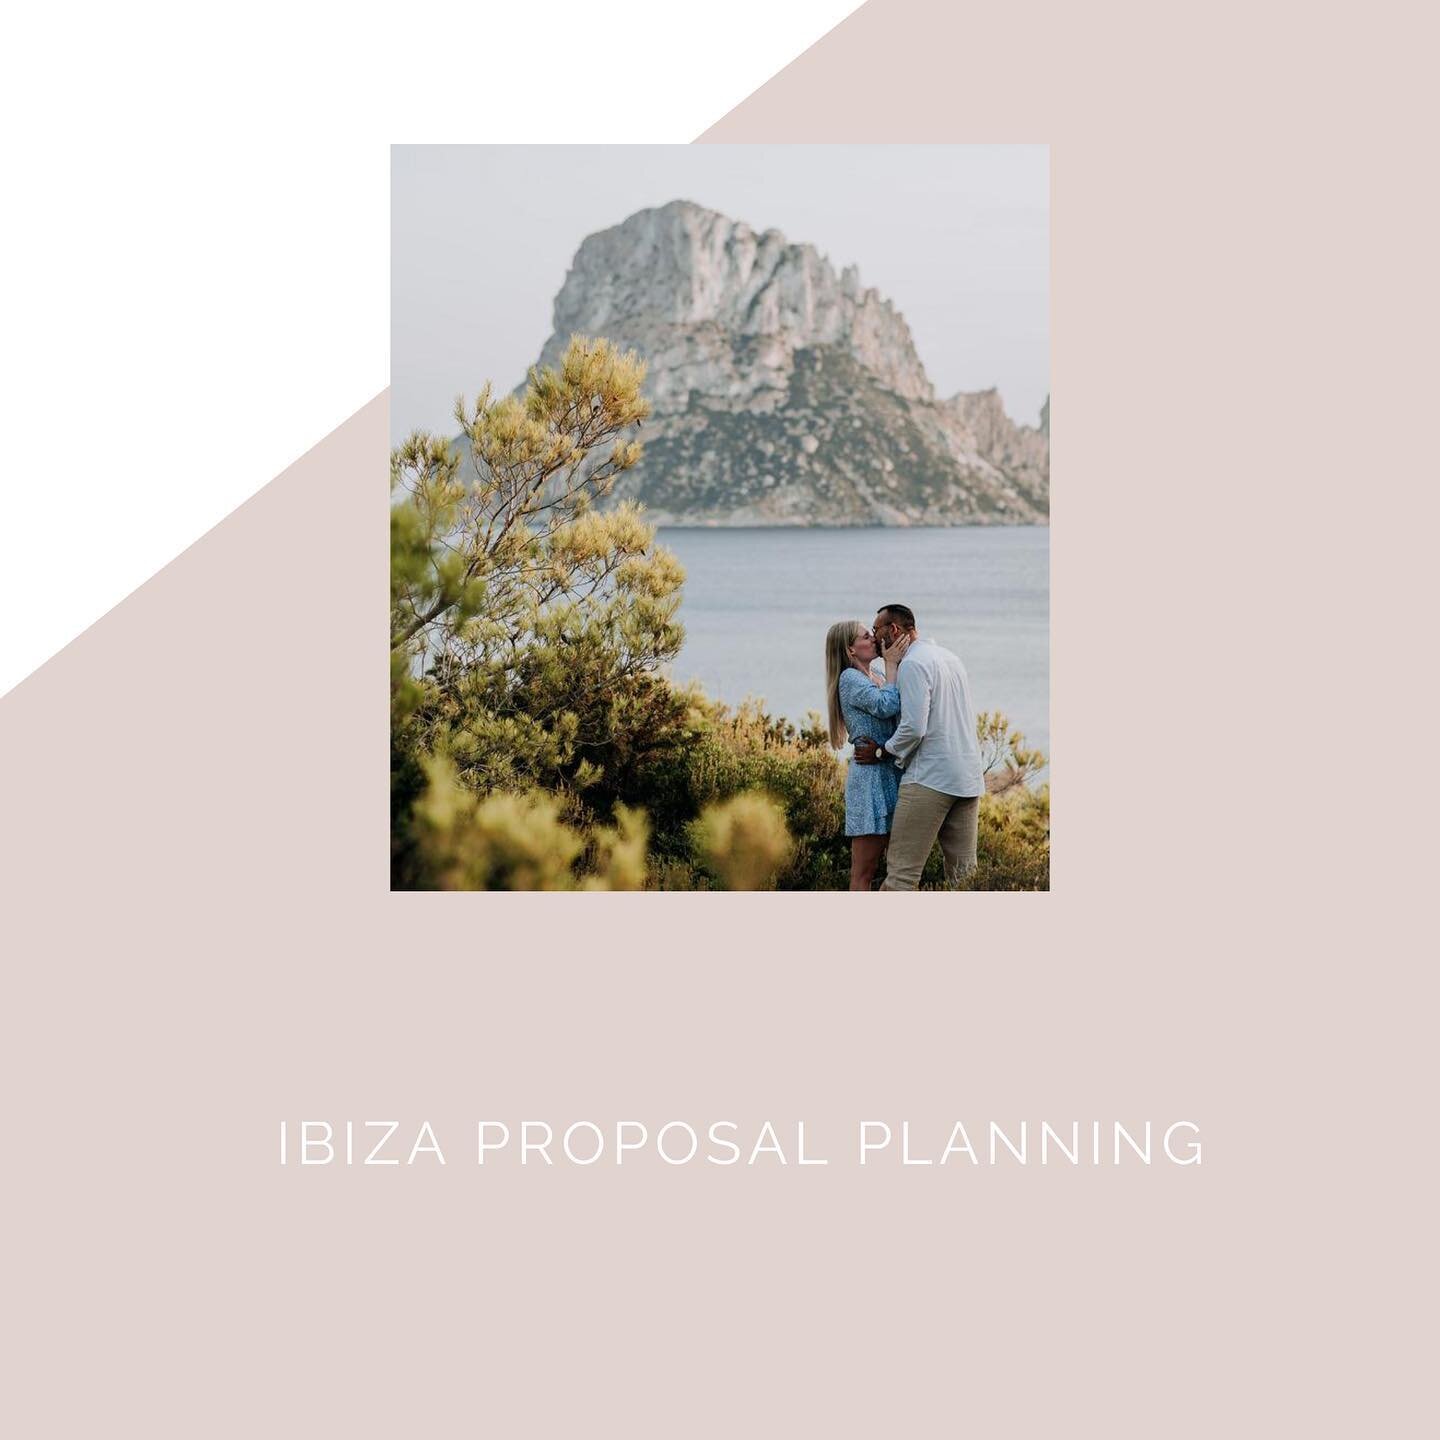 We help organising Ibiza&lsquo;s most beautiful proposals 

Die sch&ouml;nsten Orte und Ideen f&uuml;r deine Verlobung auf Ibiza

#ibizaproposalplanning #ibizaproposal #ibiza #ibizablog #ibizaweddingblog #ibizawedding #ibizacouple #ibizastyle #ibizav